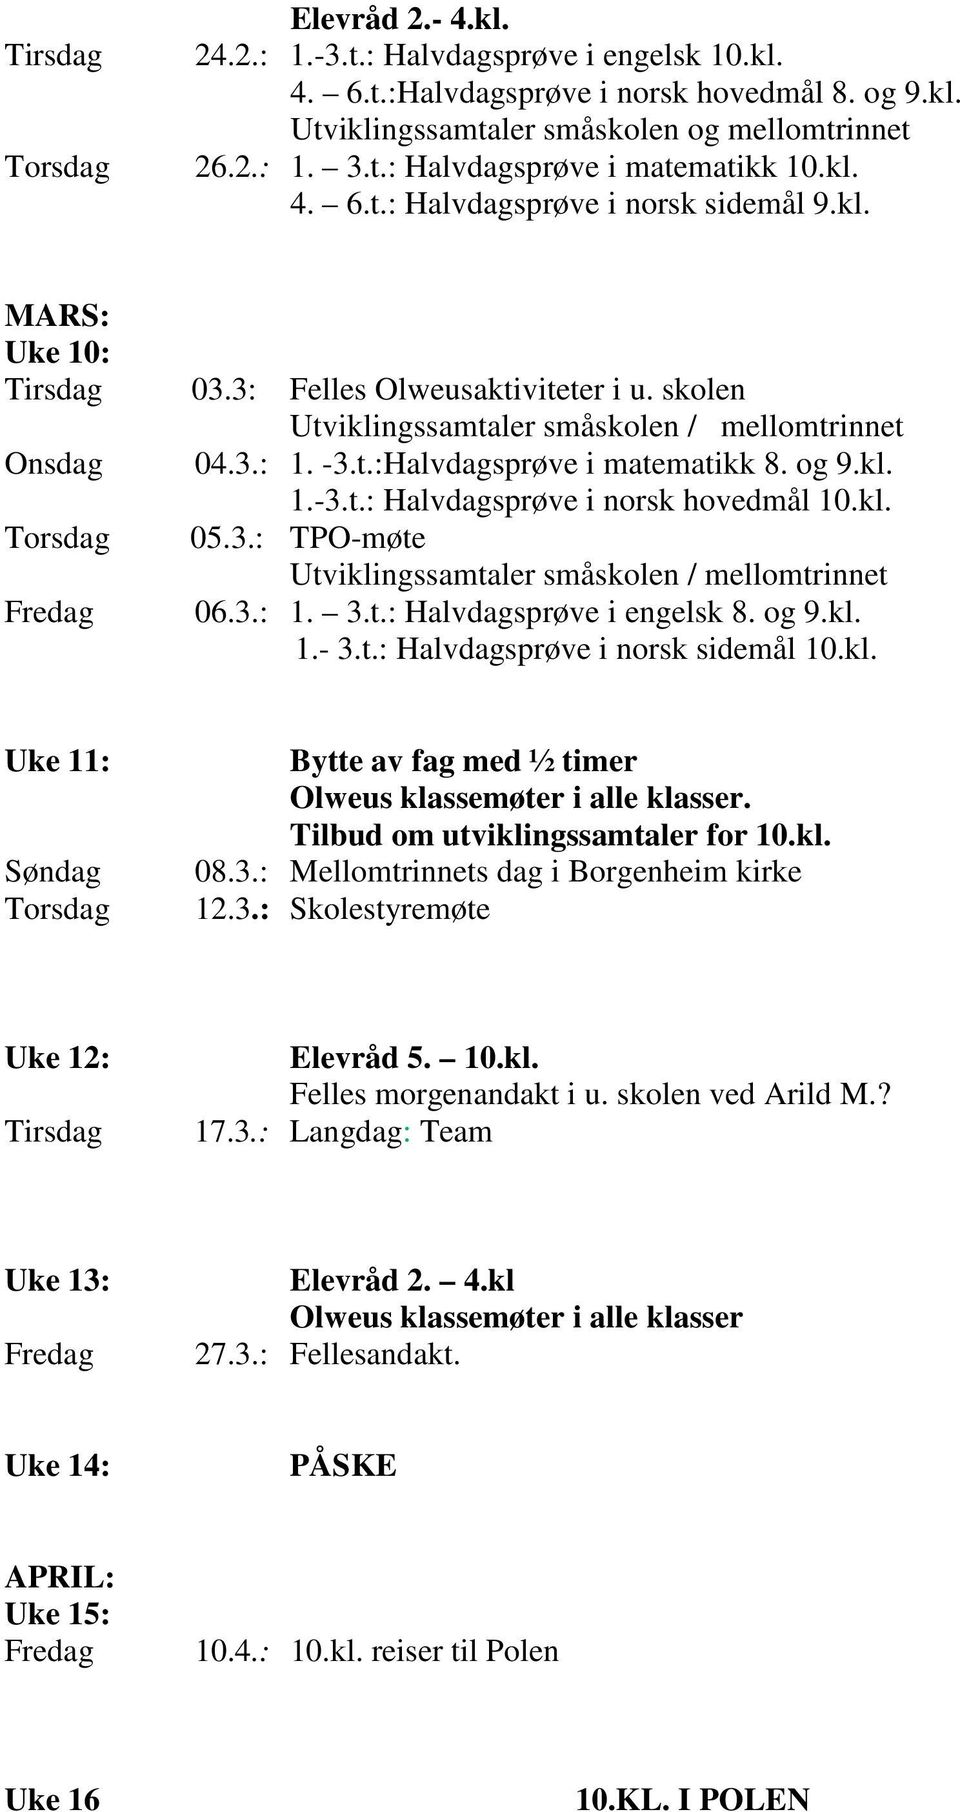 og 9.kl. 1.-3.t.: Halvdagsprøve i norsk hovedmål 10.kl. 05.3.: TPO-møte Utviklingssamtaler småskolen / mellomtrinnet 06.3.: 1. 3.t.: Halvdagsprøve i engelsk 8. og 9.kl. 1.- 3.t.: Halvdagsprøve i norsk sidemål 10.